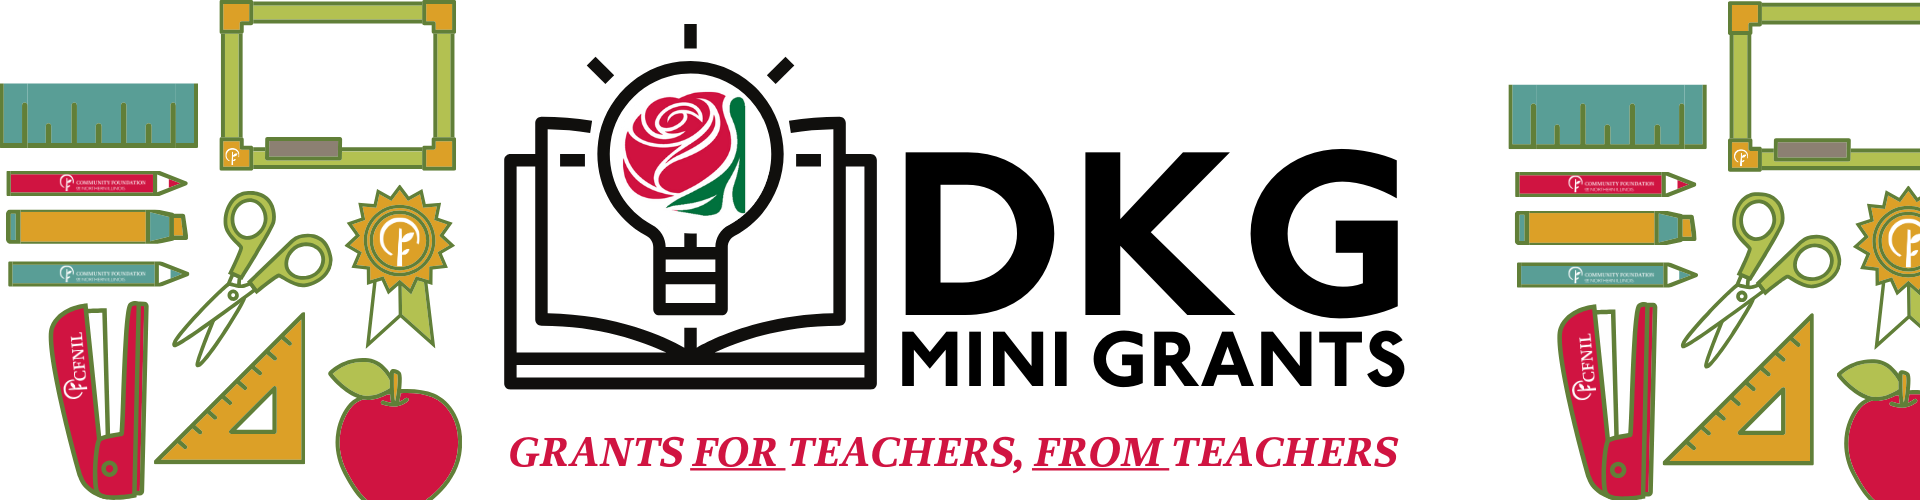 DKG Mini Grants: Grants FOR teachers FROM teachers. Application open now